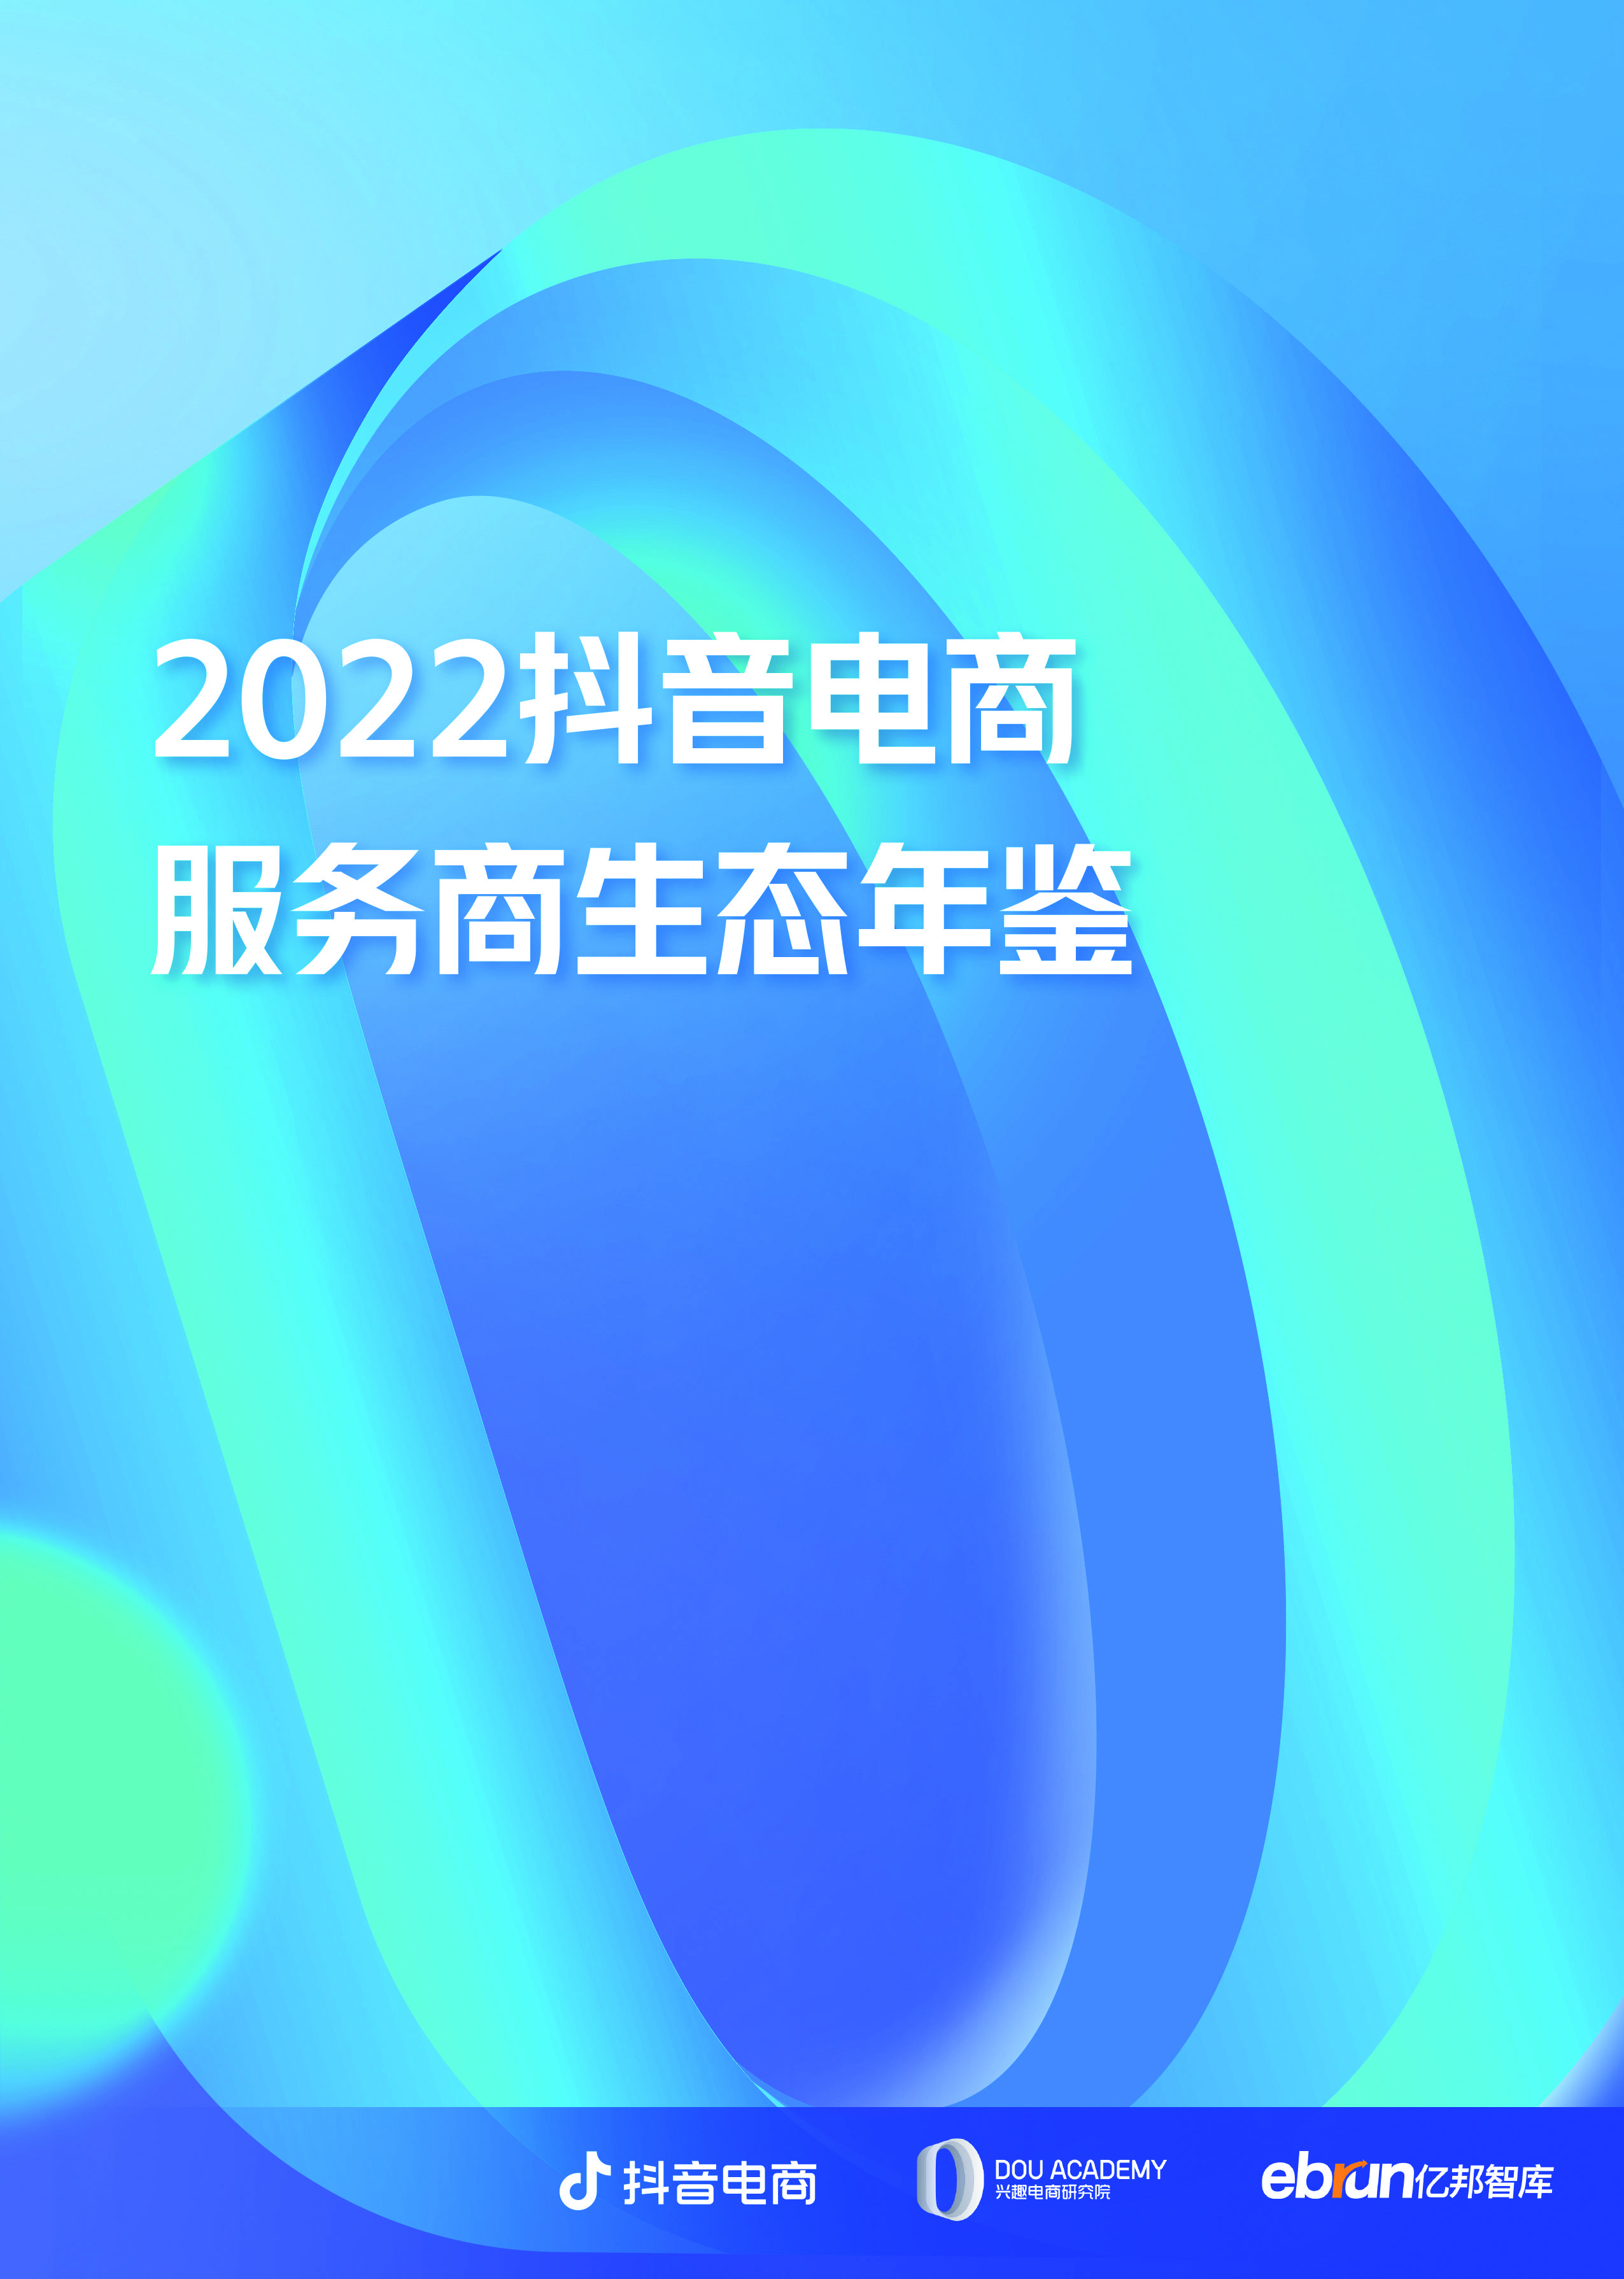 亿邦智库与抖音电商联合发布《2022抖音电商服务商生态年鉴》 